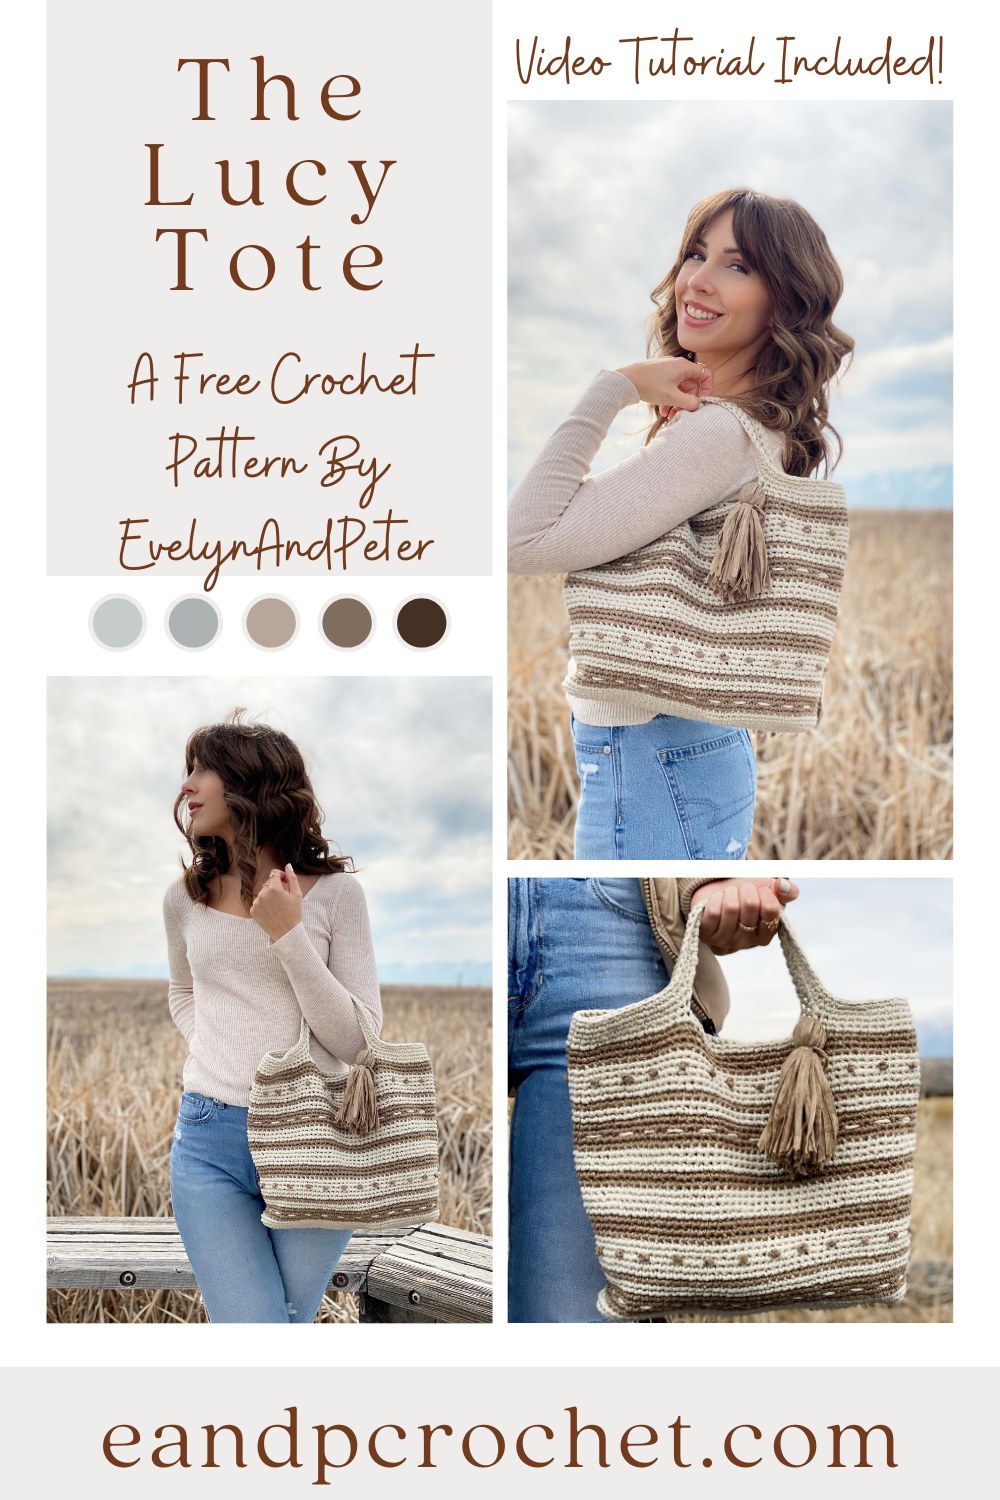 Crochet Purse Pattern Crochet Bag Pattern Crochet (Instant Download) - Etsy  | Crochet purse patterns, Crochet bag pattern, Purse patterns